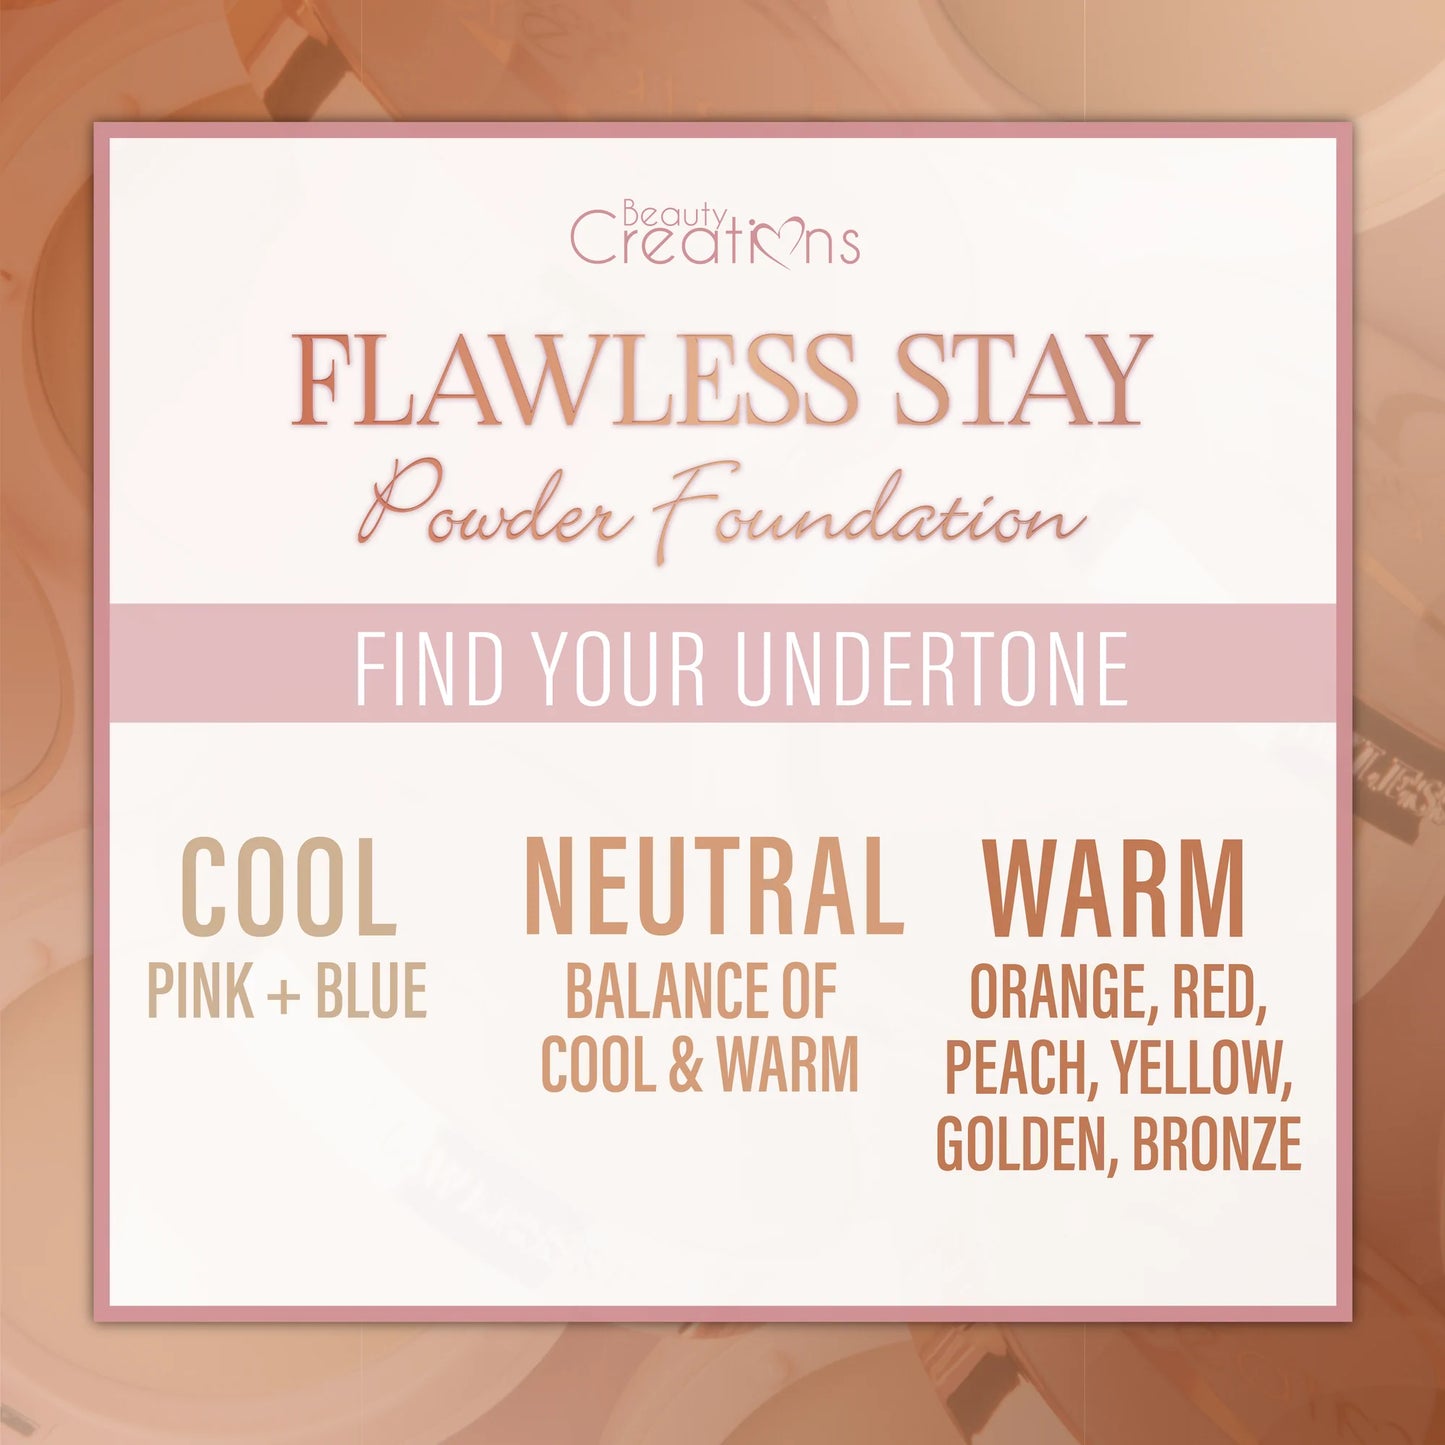 17.0 - Flawless Stay Powder Foundation